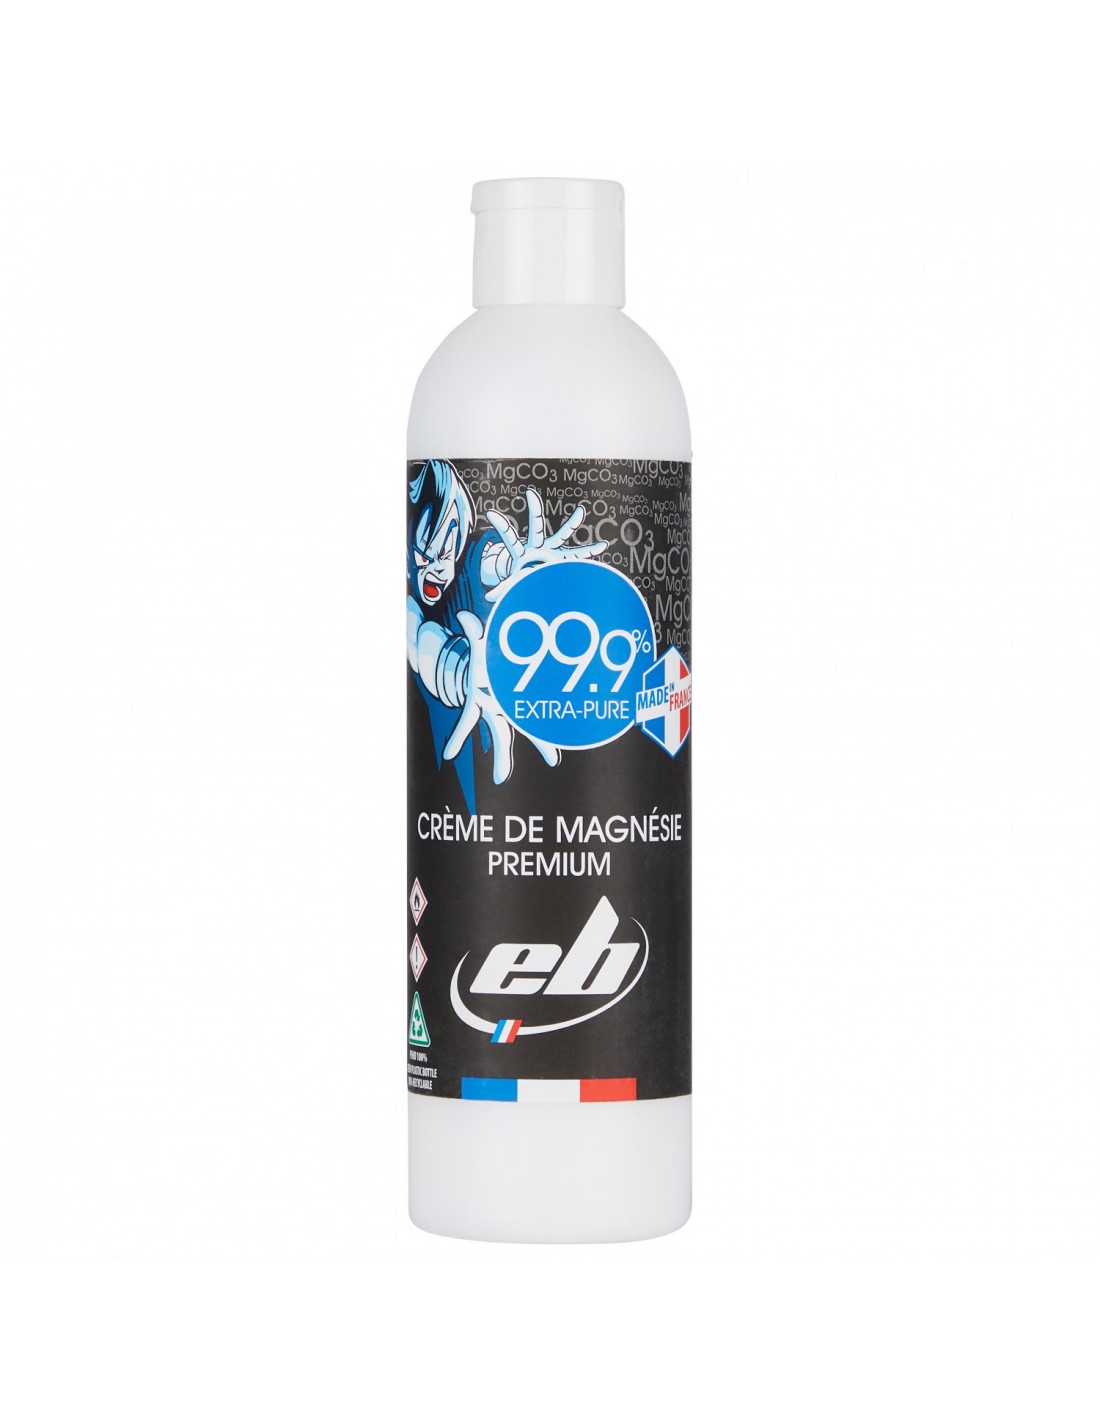 EB Liquid Chalk 250ml Chalkvariante - Liquid Chalk, Chalkmenge - 201 - 300 ml, von eb